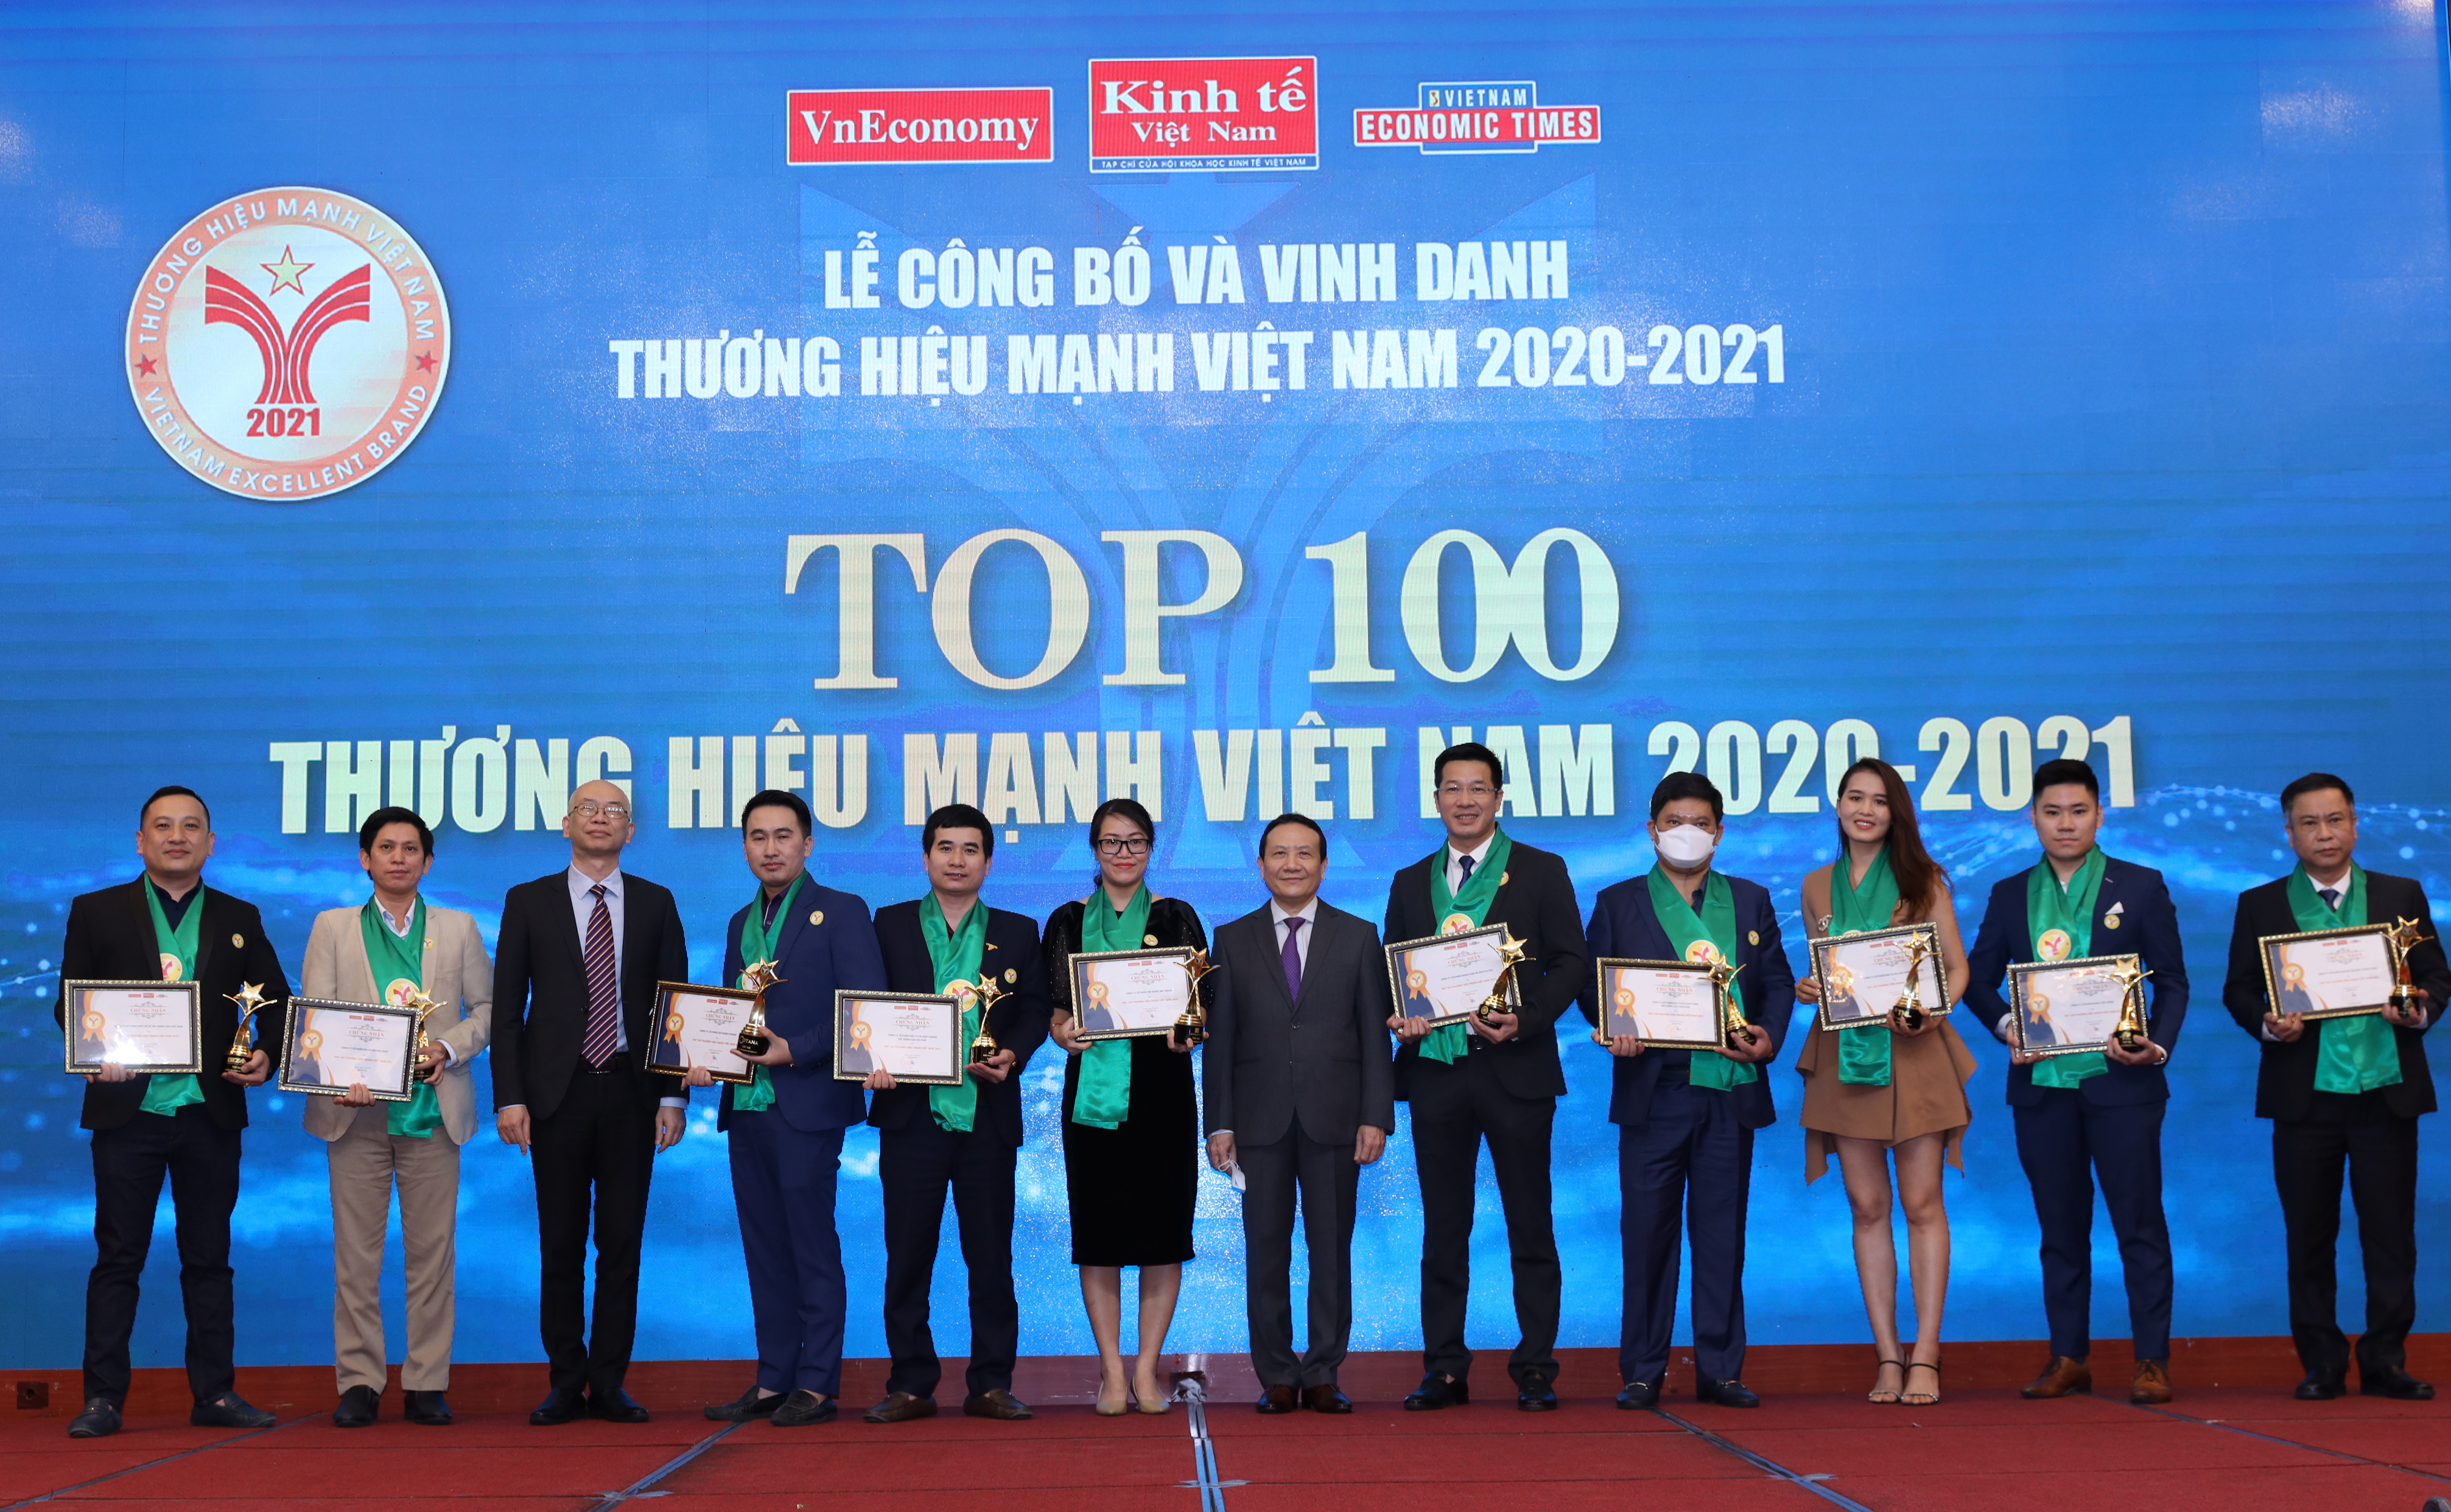 10 doanh nghiệp đầu tiên được vinh danh trong TOP 100 Thương hiệu Mạnh Việt Nam 2020-2021 được vinh danh gồm: Công ty Cổ phần Tập đoàn MIK Group, Công ty Cổ phần Đầu tư và Kinh doanh Bất động sản Hải Phát (HAI PHAT Land), Công ty Cổ phần Khách sạn và Dịch vụ OCH (OCH Corporation), Công ty Cổ phần Đầu tư và Phát triển Bất động sản HUDLand, Công ty Cổ phần đầu tư và cho thuê tài sản TNL (TNL), Công ty Cổ phần Tập đoàn Cotana, Công ty Cổ phần Tập đoàn Hòa Phát, Công ty Cổ phần thiết kế và xây dựng GIZA Việt Nam, Công ty Cổ phần Nhôm Việt Dũng, và Công ty Cổ phần Tôn mạ VNSteel Thăng Long (VNSteel).